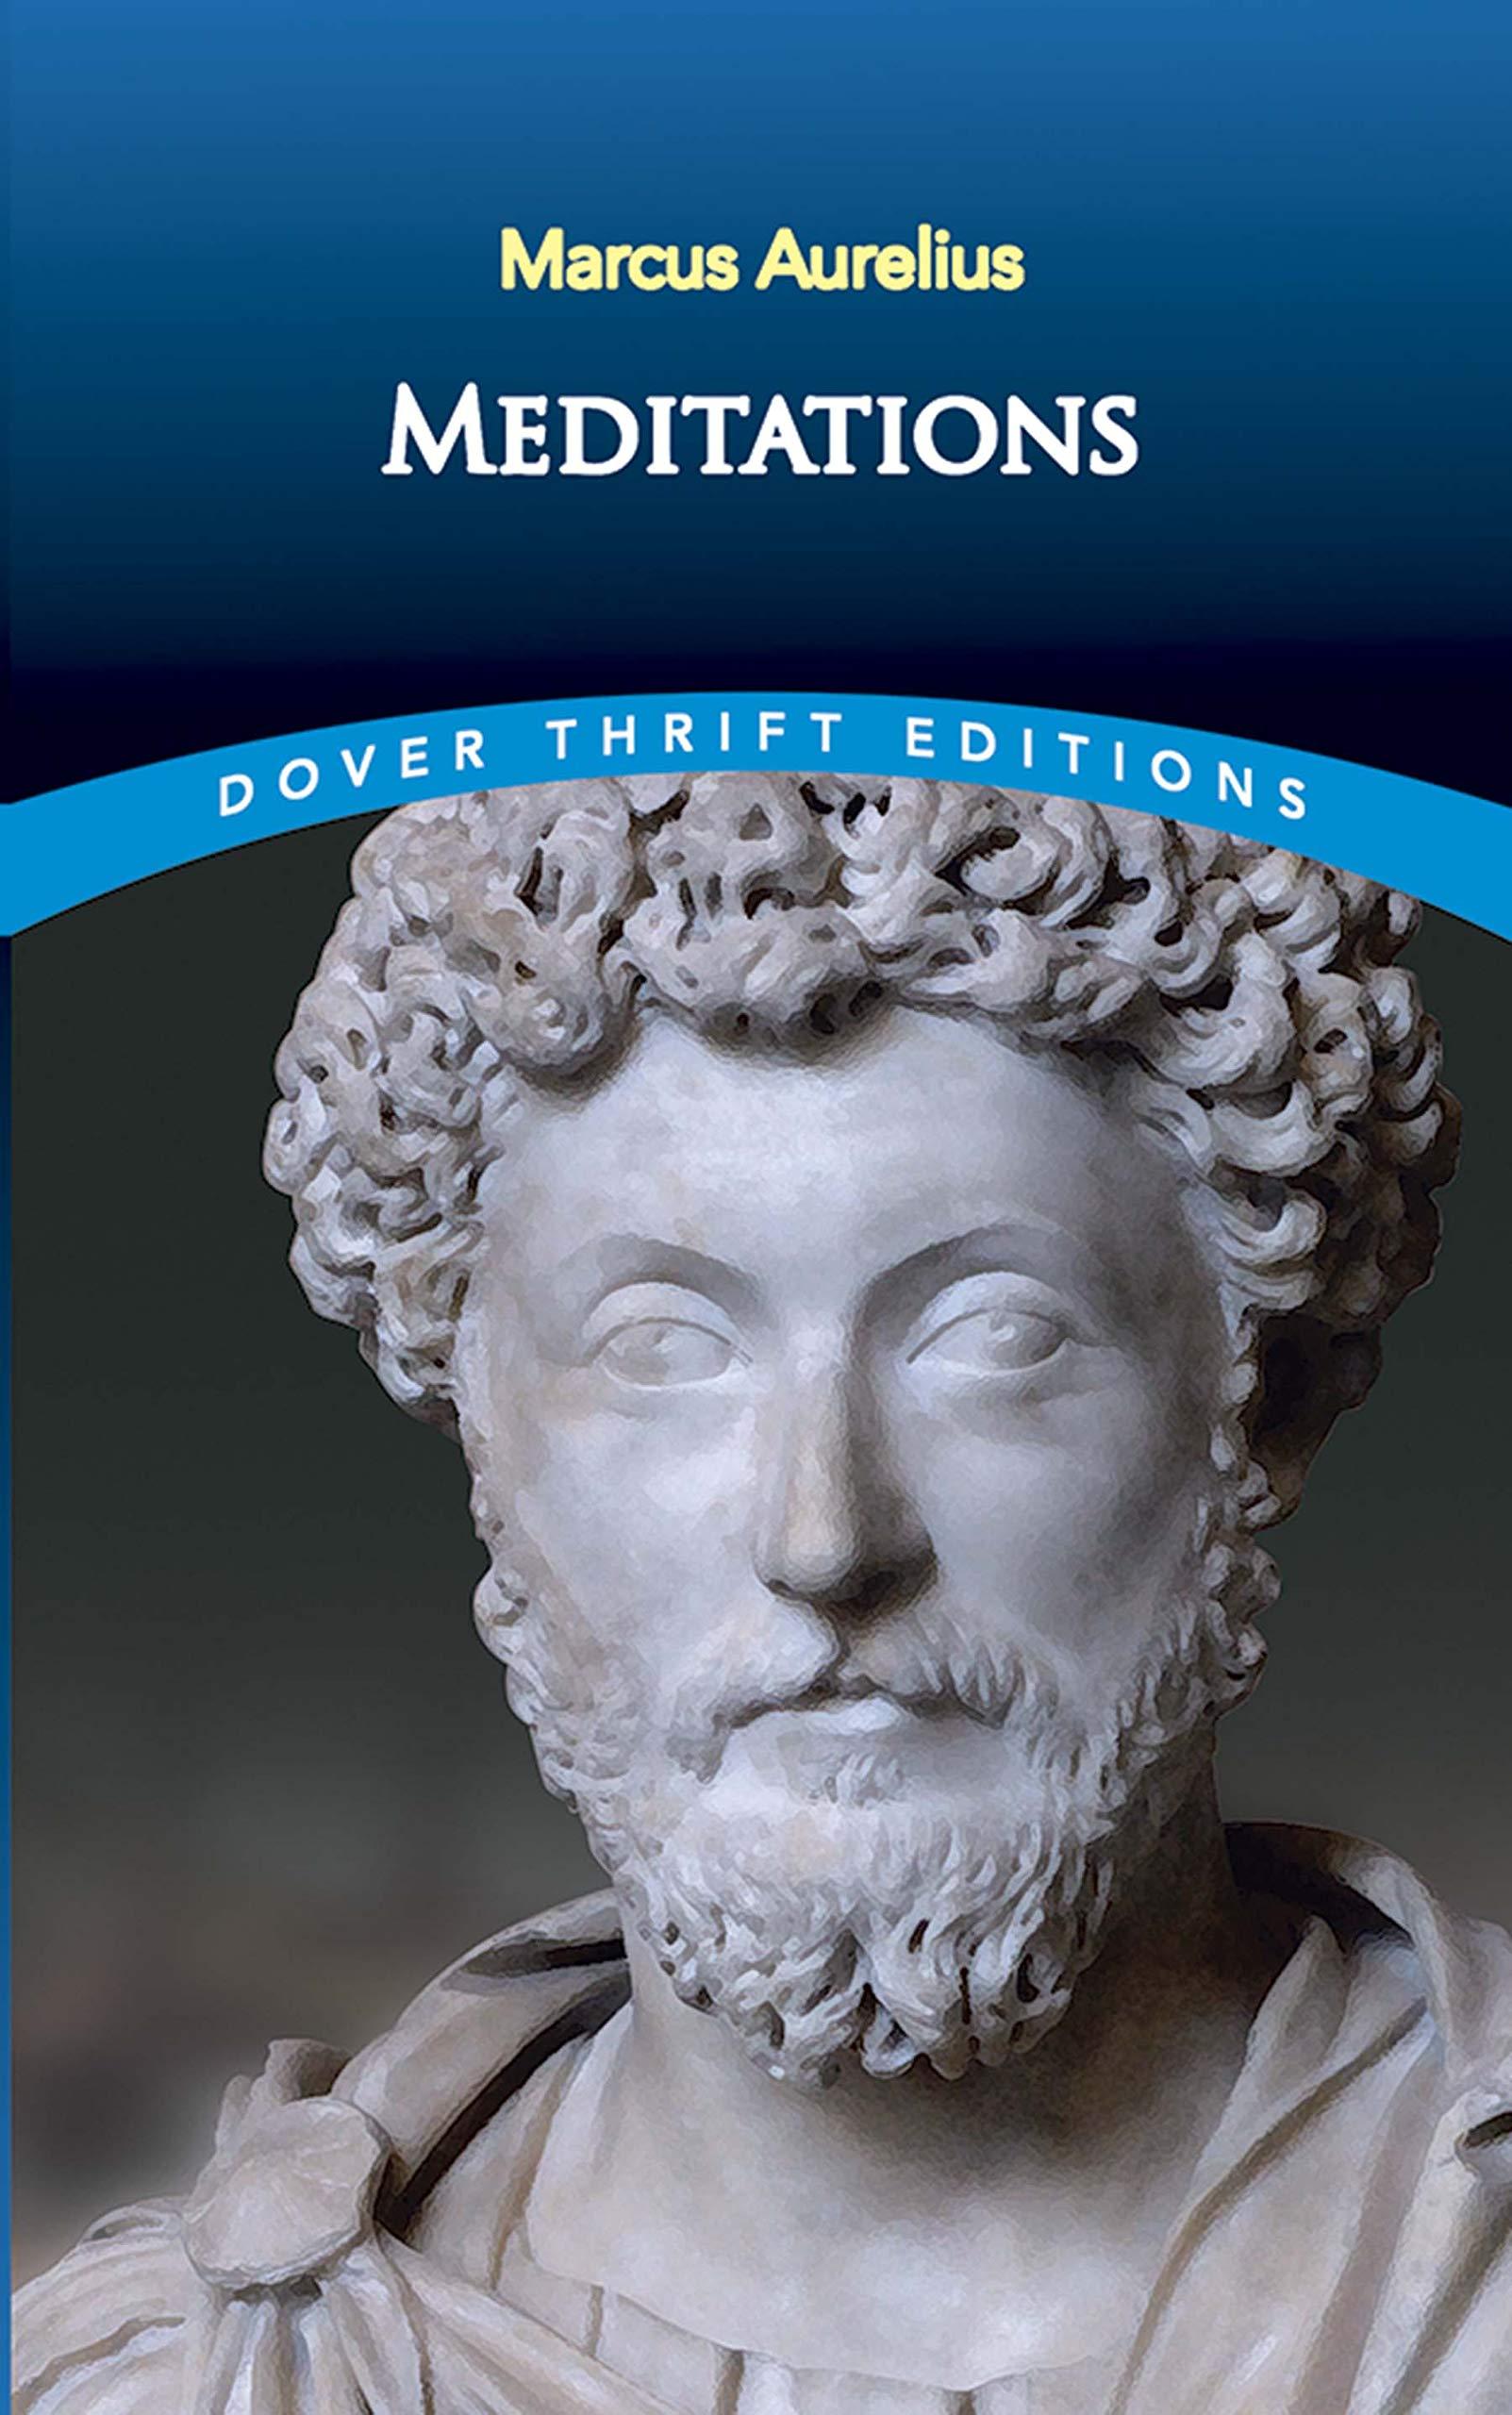 meditations of marcus aurelius pdf